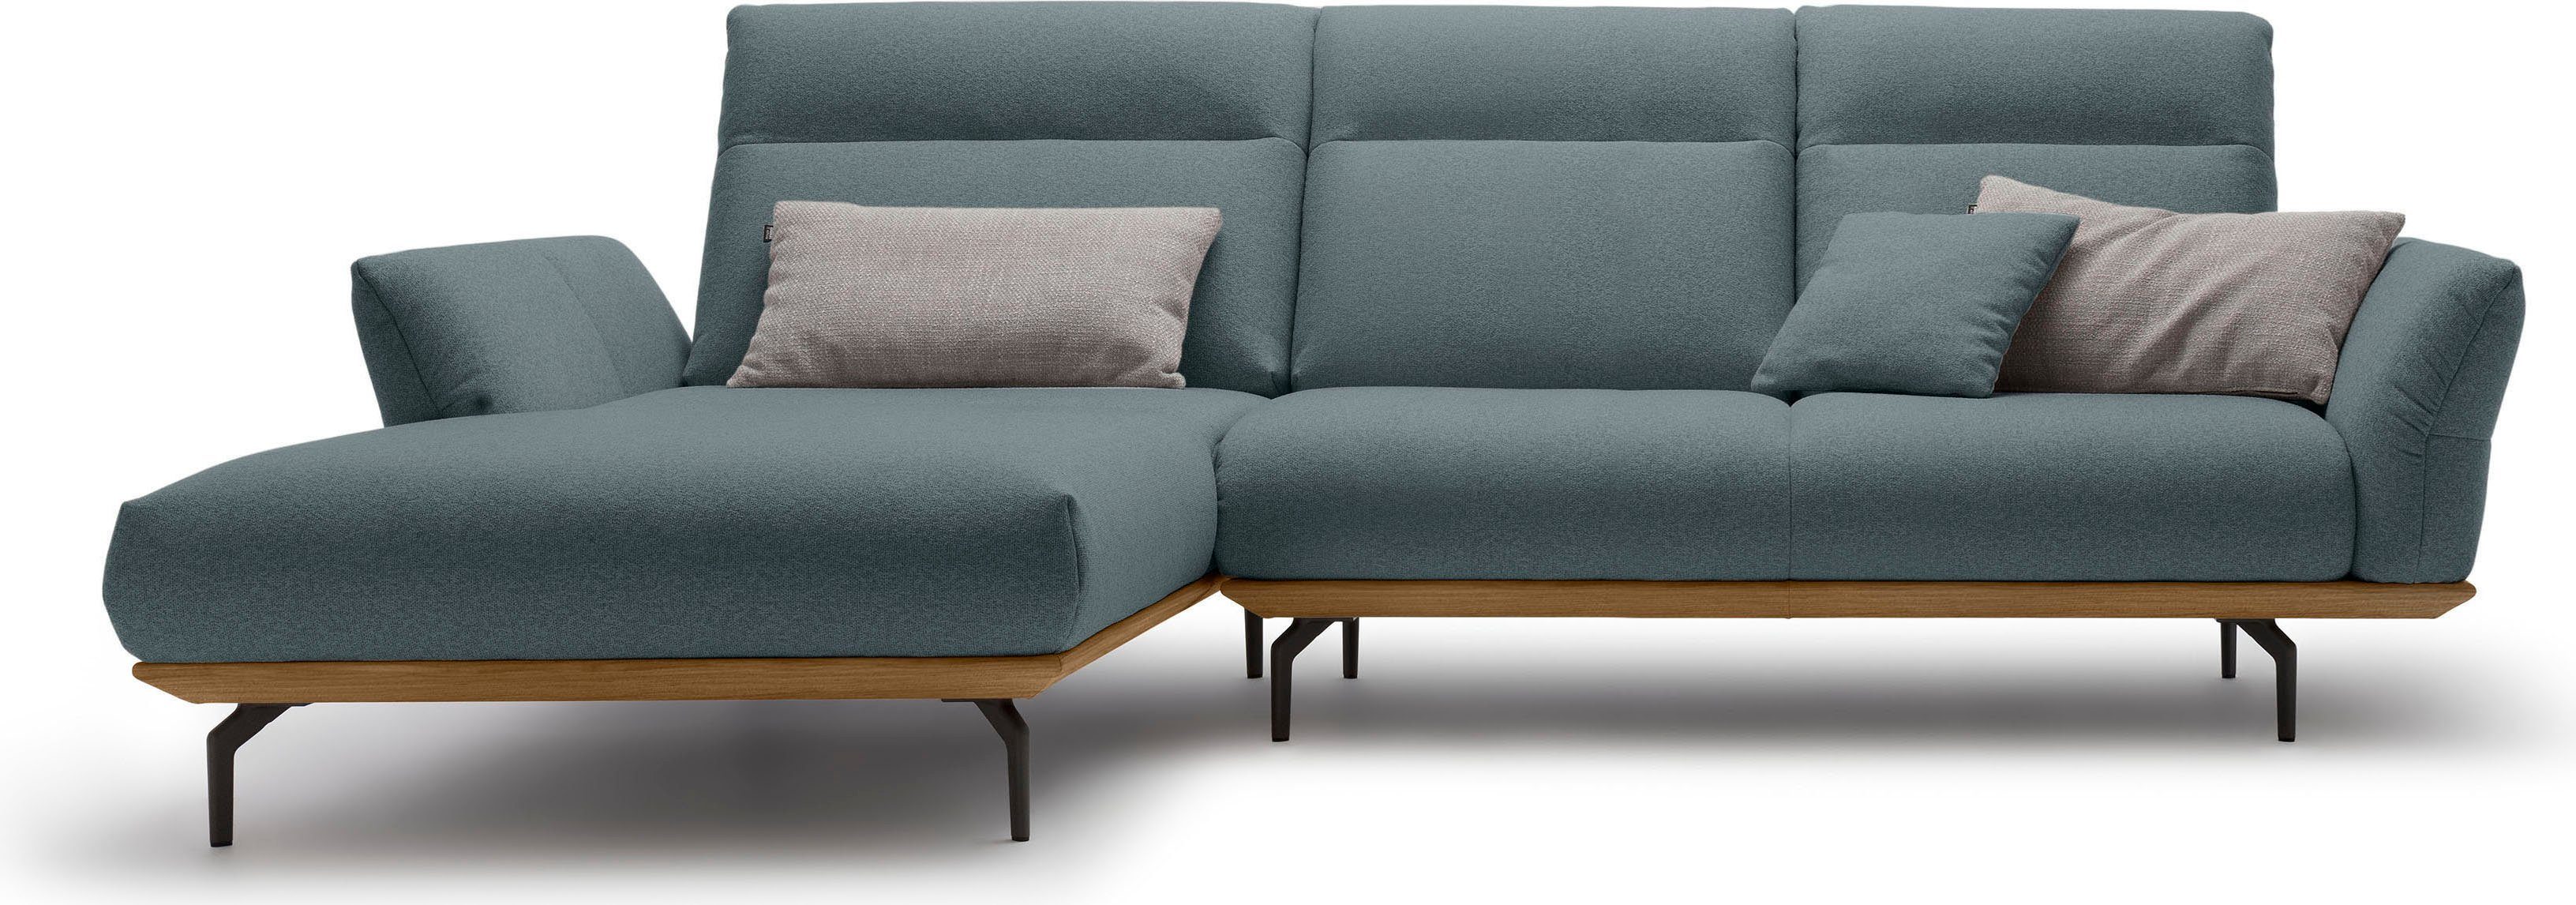 huelsta sofa hoekbank hs.460 sokkel in walnotenhout, onderstel in umbra grijs, breedte 298 cm blauw